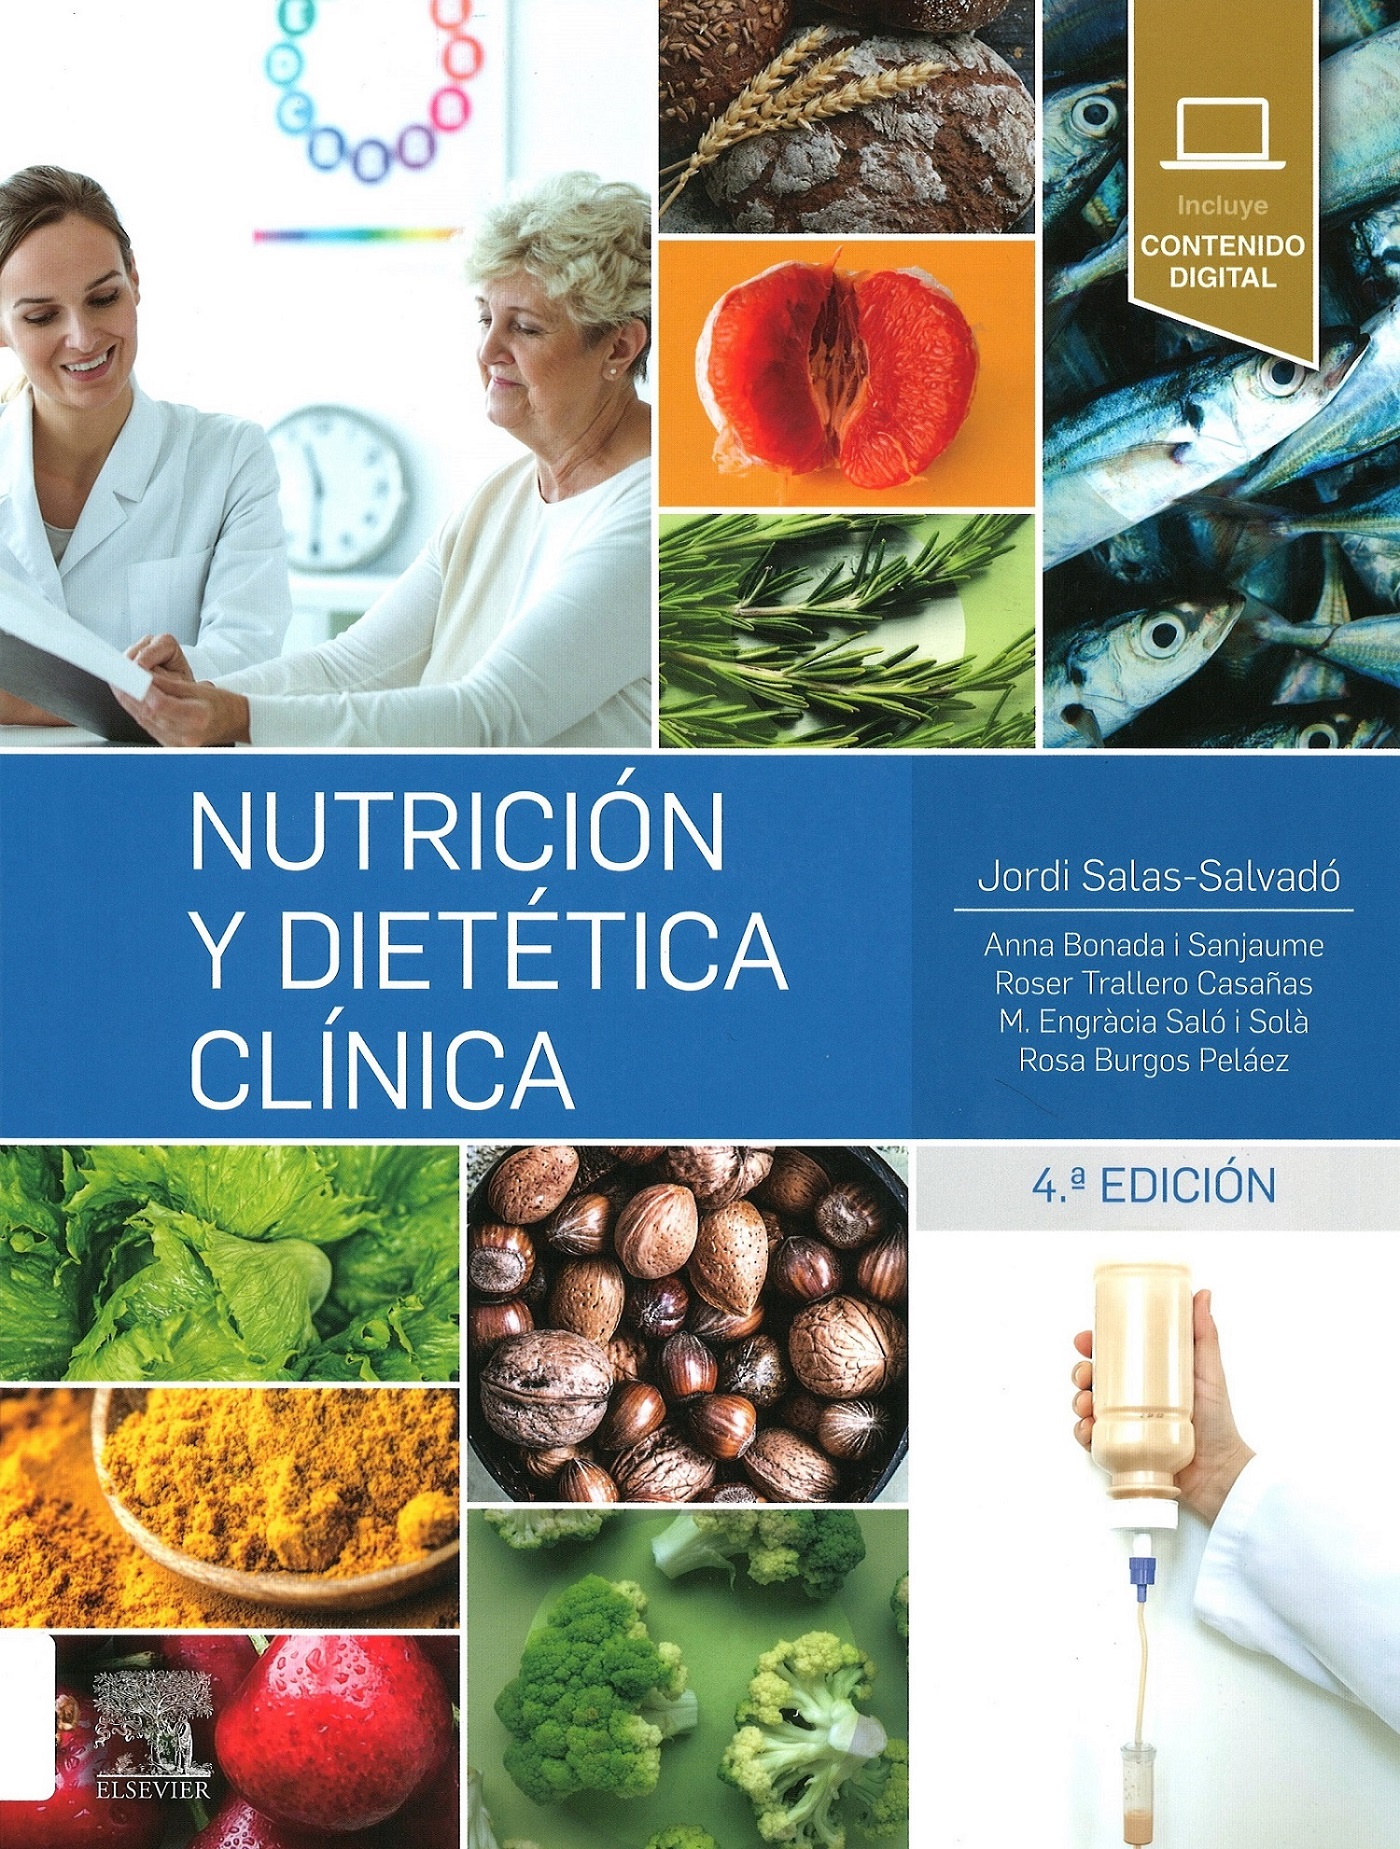 Imagen de portada del libro Nutrición y dietética clínica